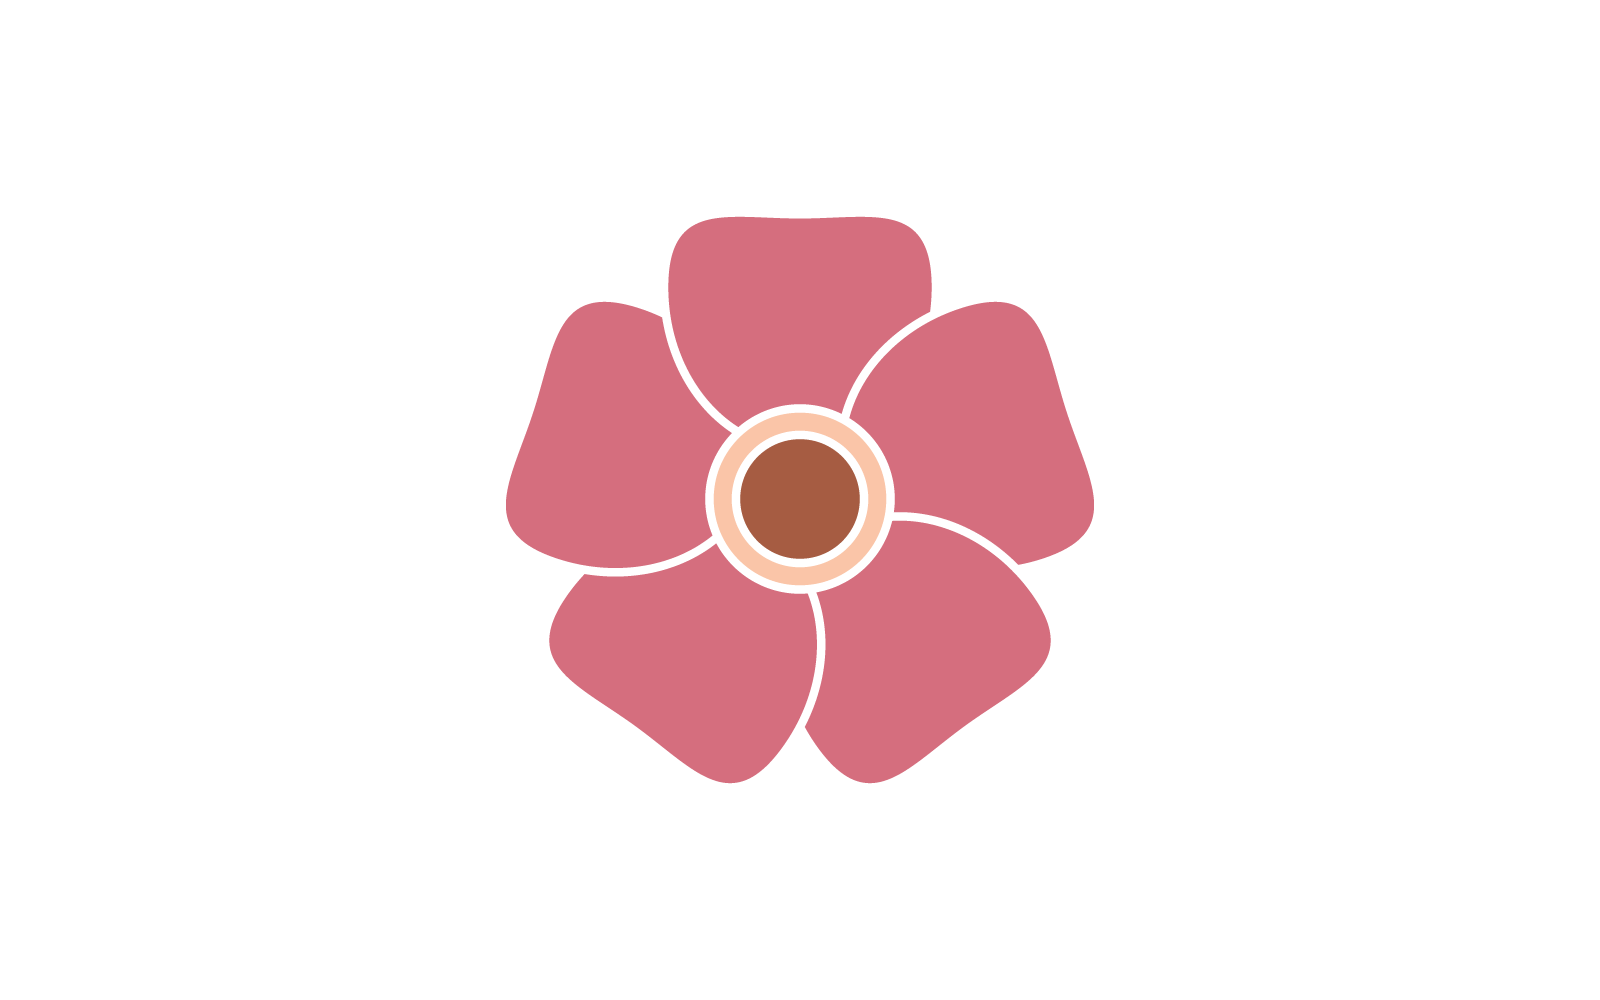 Plumeria flower logo illustration template vector